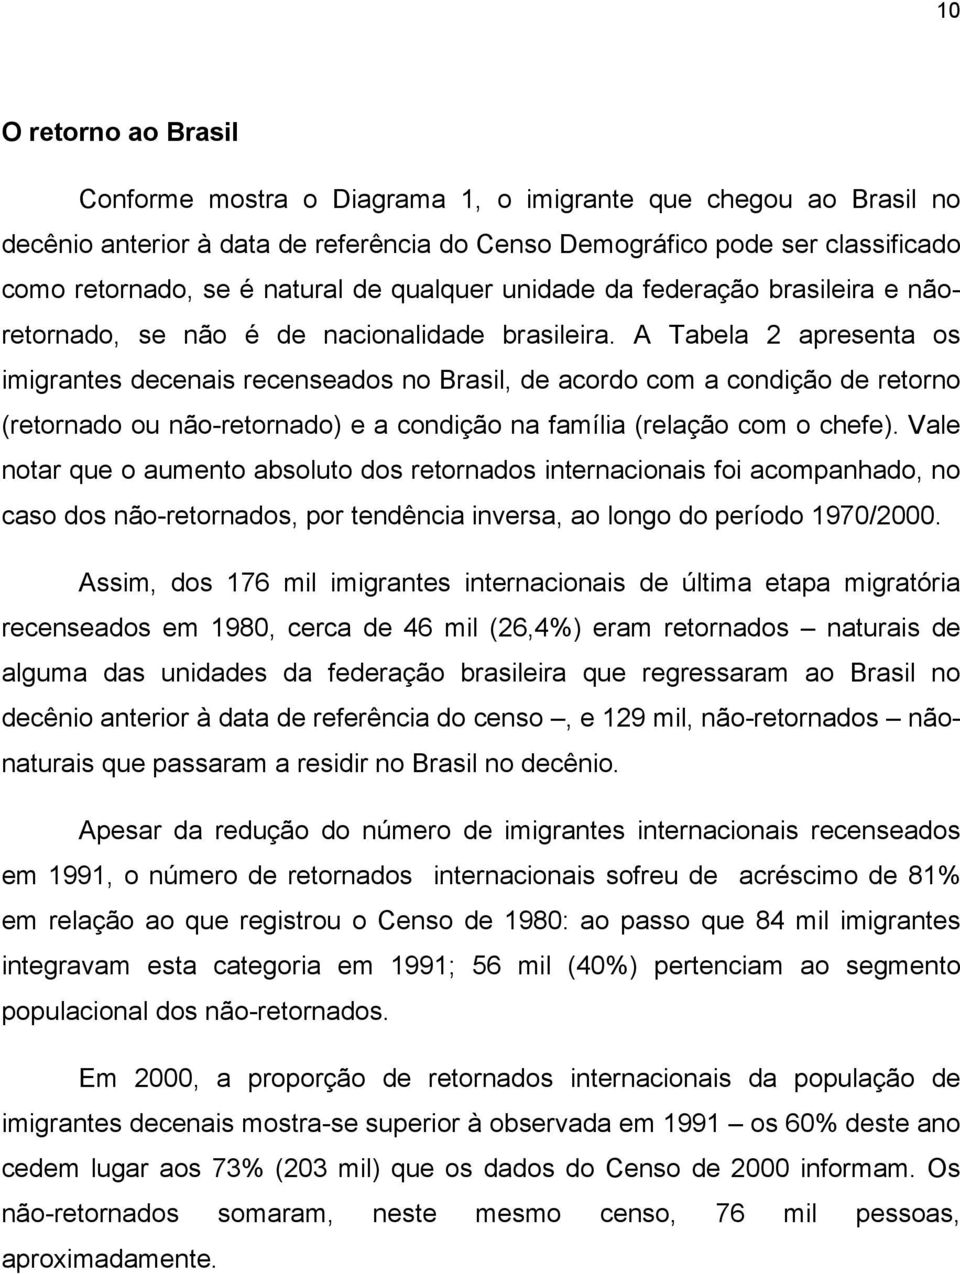 A Tabela 2 apresenta os imigrantes decenais recenseados no Brasil, de acordo com a condição de retorno (retornado ou não-retornado) e a condição na família (relação com o chefe).